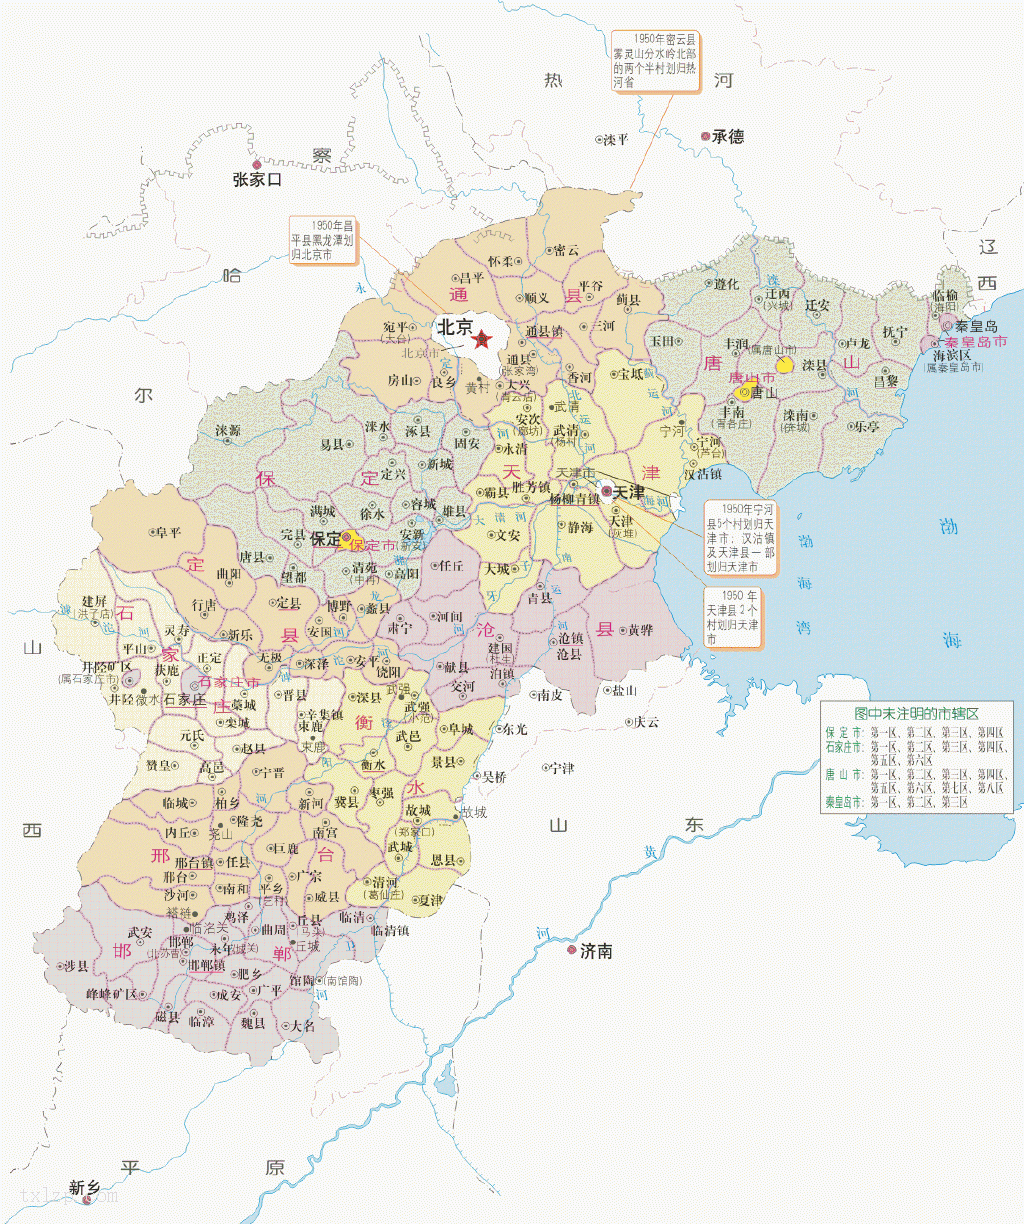 中国河北省地图全图_万图壁纸网